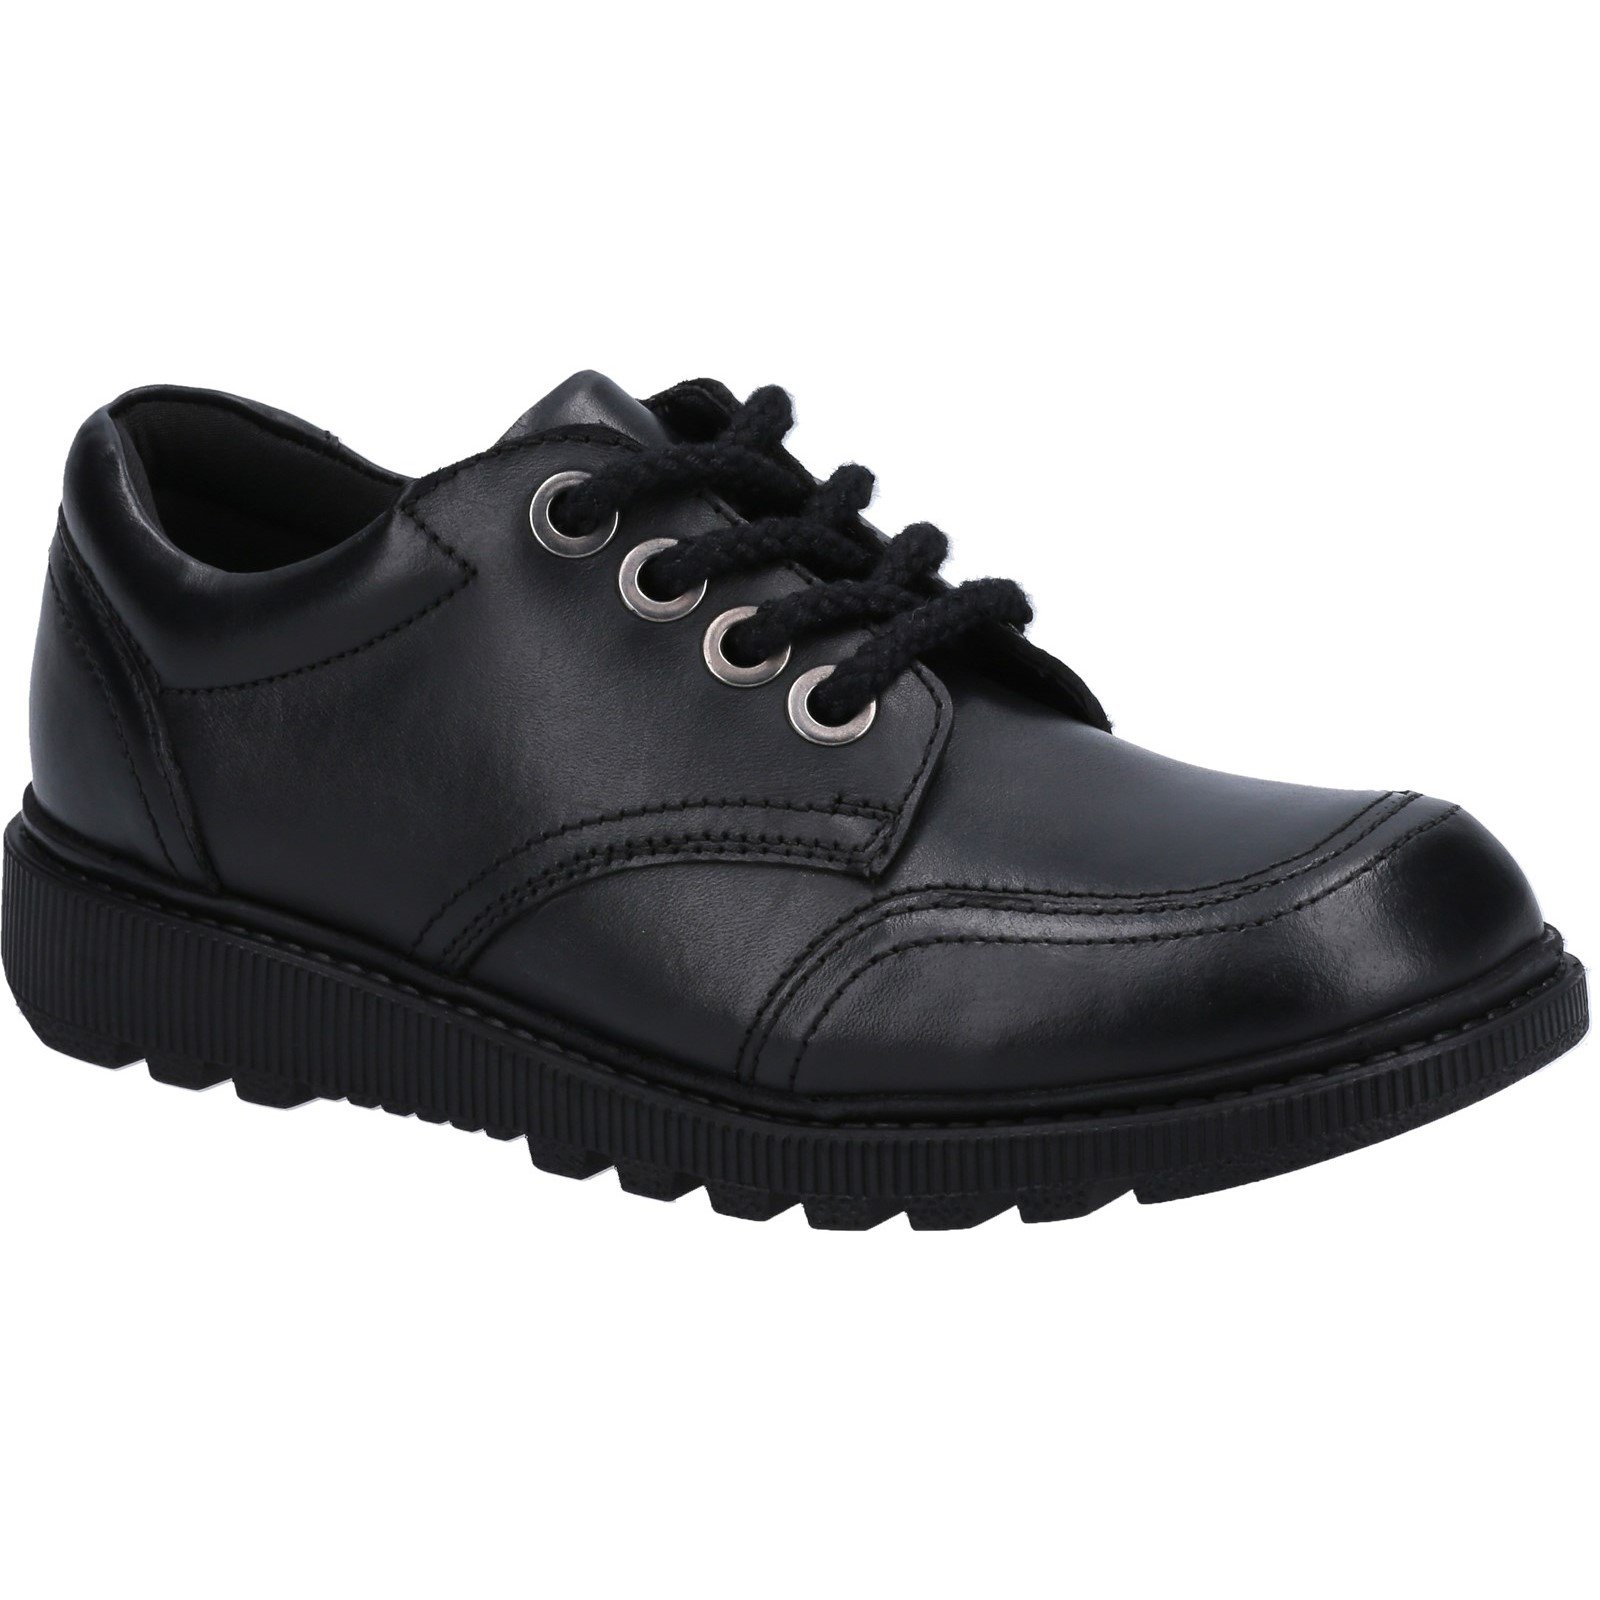 Hush Puppies Kid's Kiera Senior School Shoe Black 30822 - Black 4